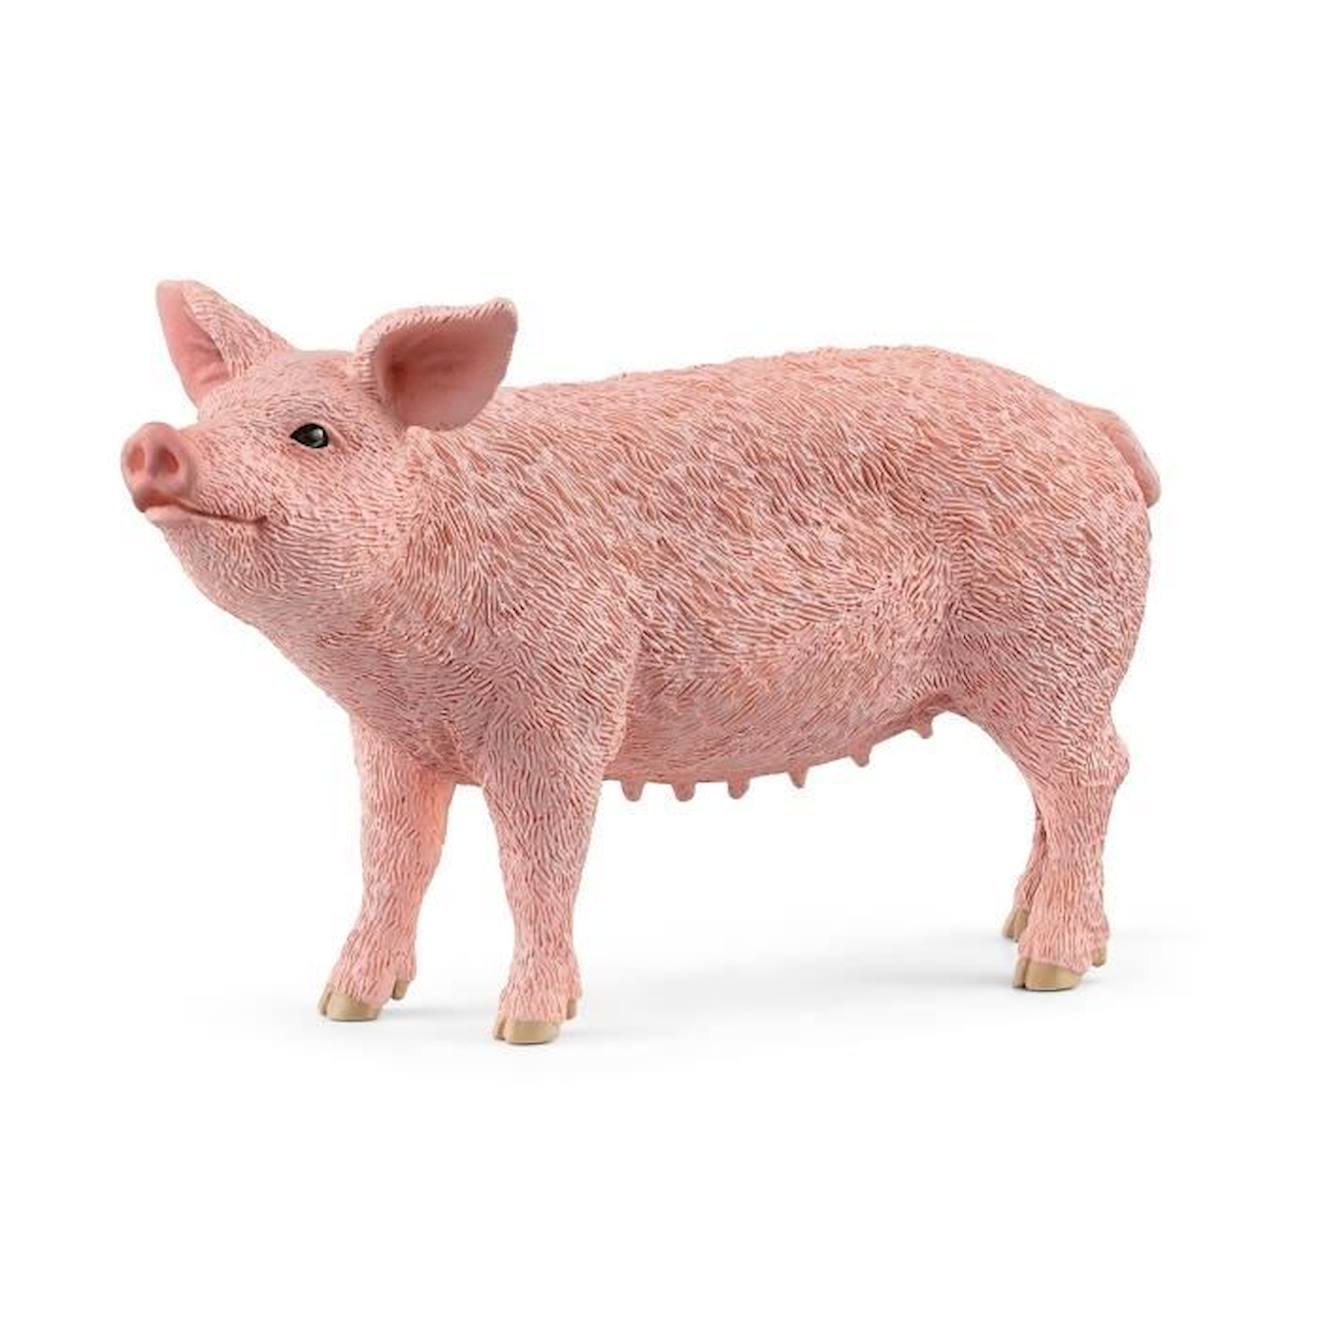 Figurine Cochon Schleich Farm World - Modèle 13933 - Pour Enfant De 3 Ans Et Plus Beige